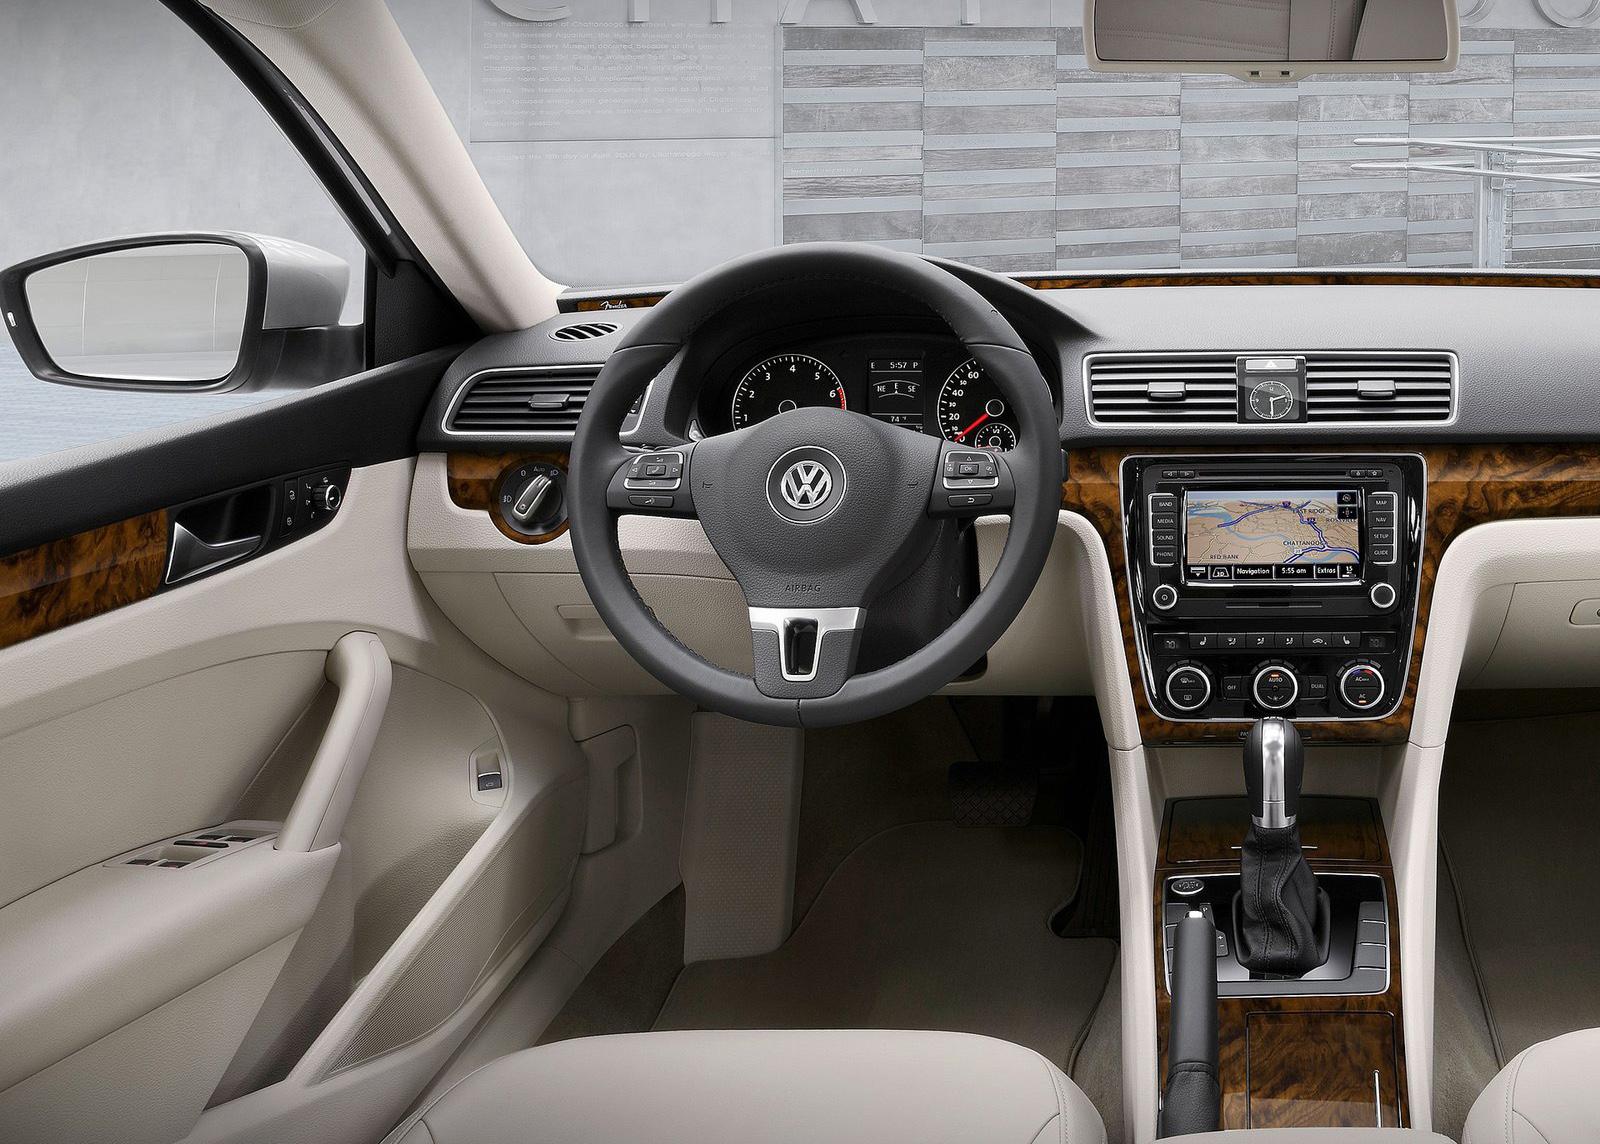 2012 US Volkswagen Passat